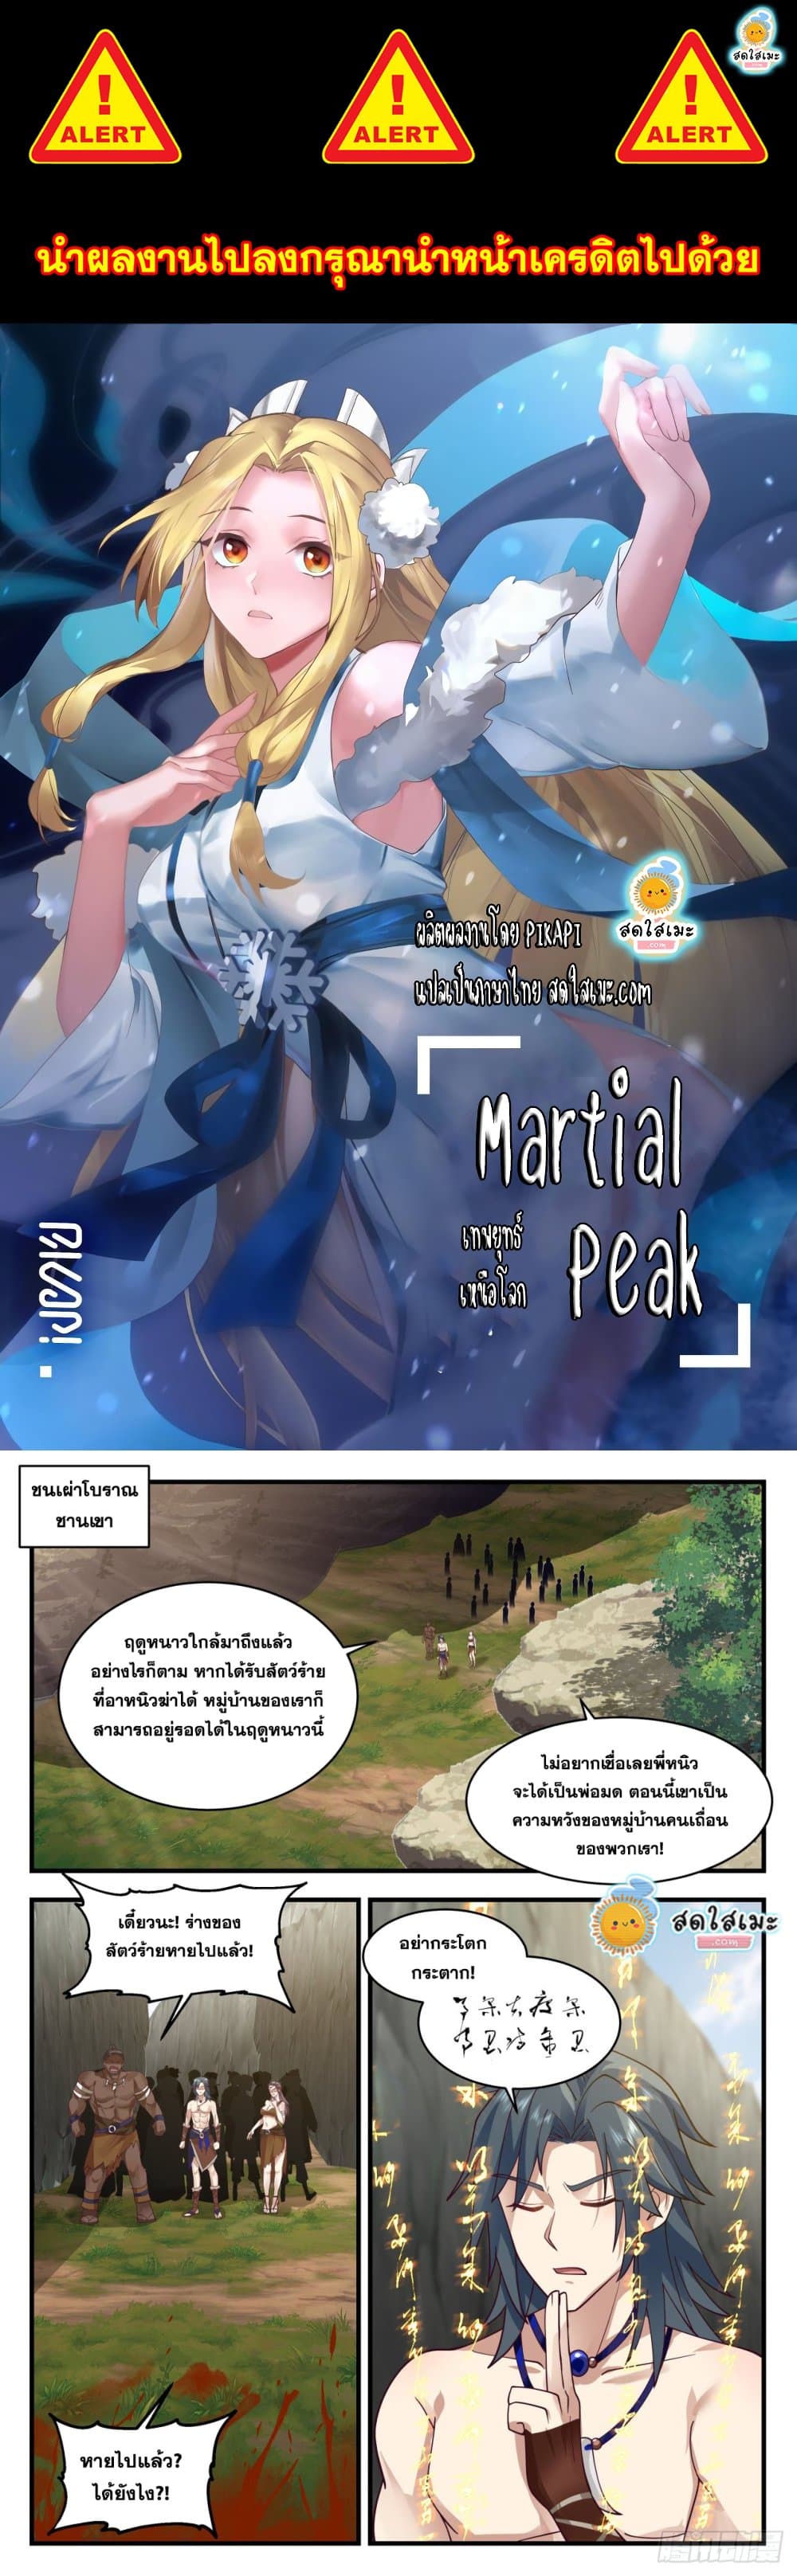 Martial Peak 2000 (1)